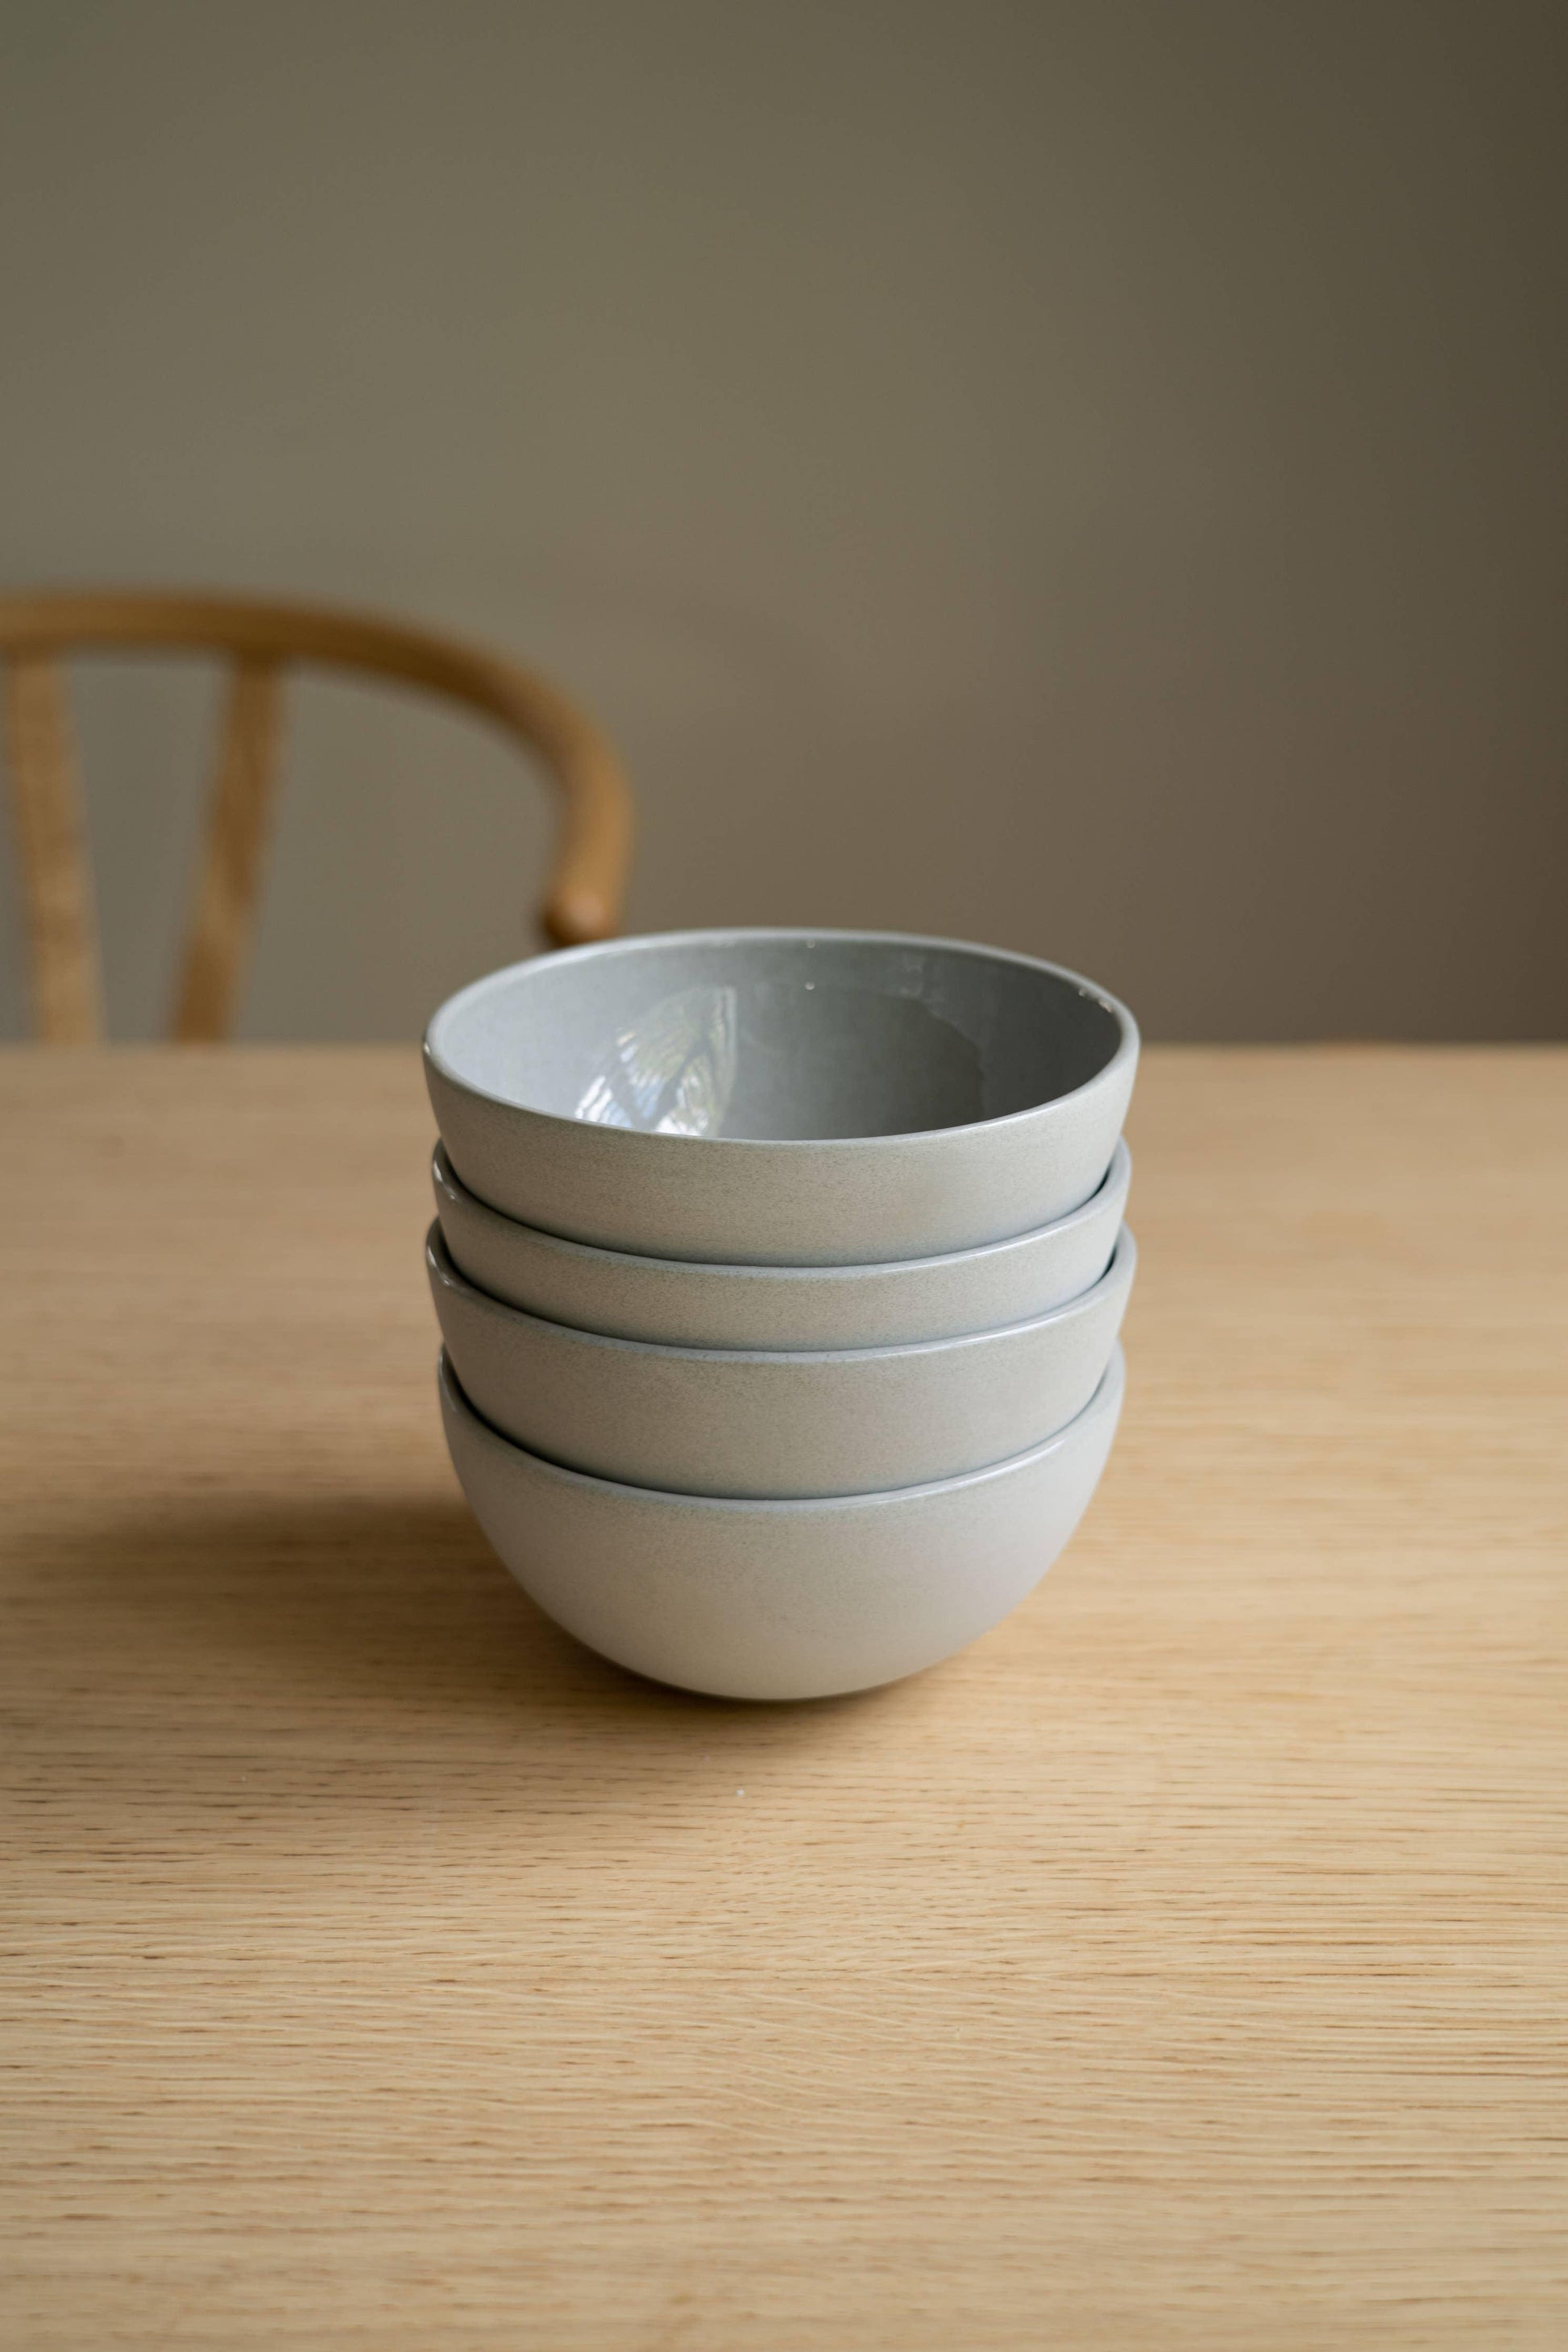 Ethical Trade Co Home Grey Sky / Everyday Bowl Handmade Ukrainian Porcelain Bowls